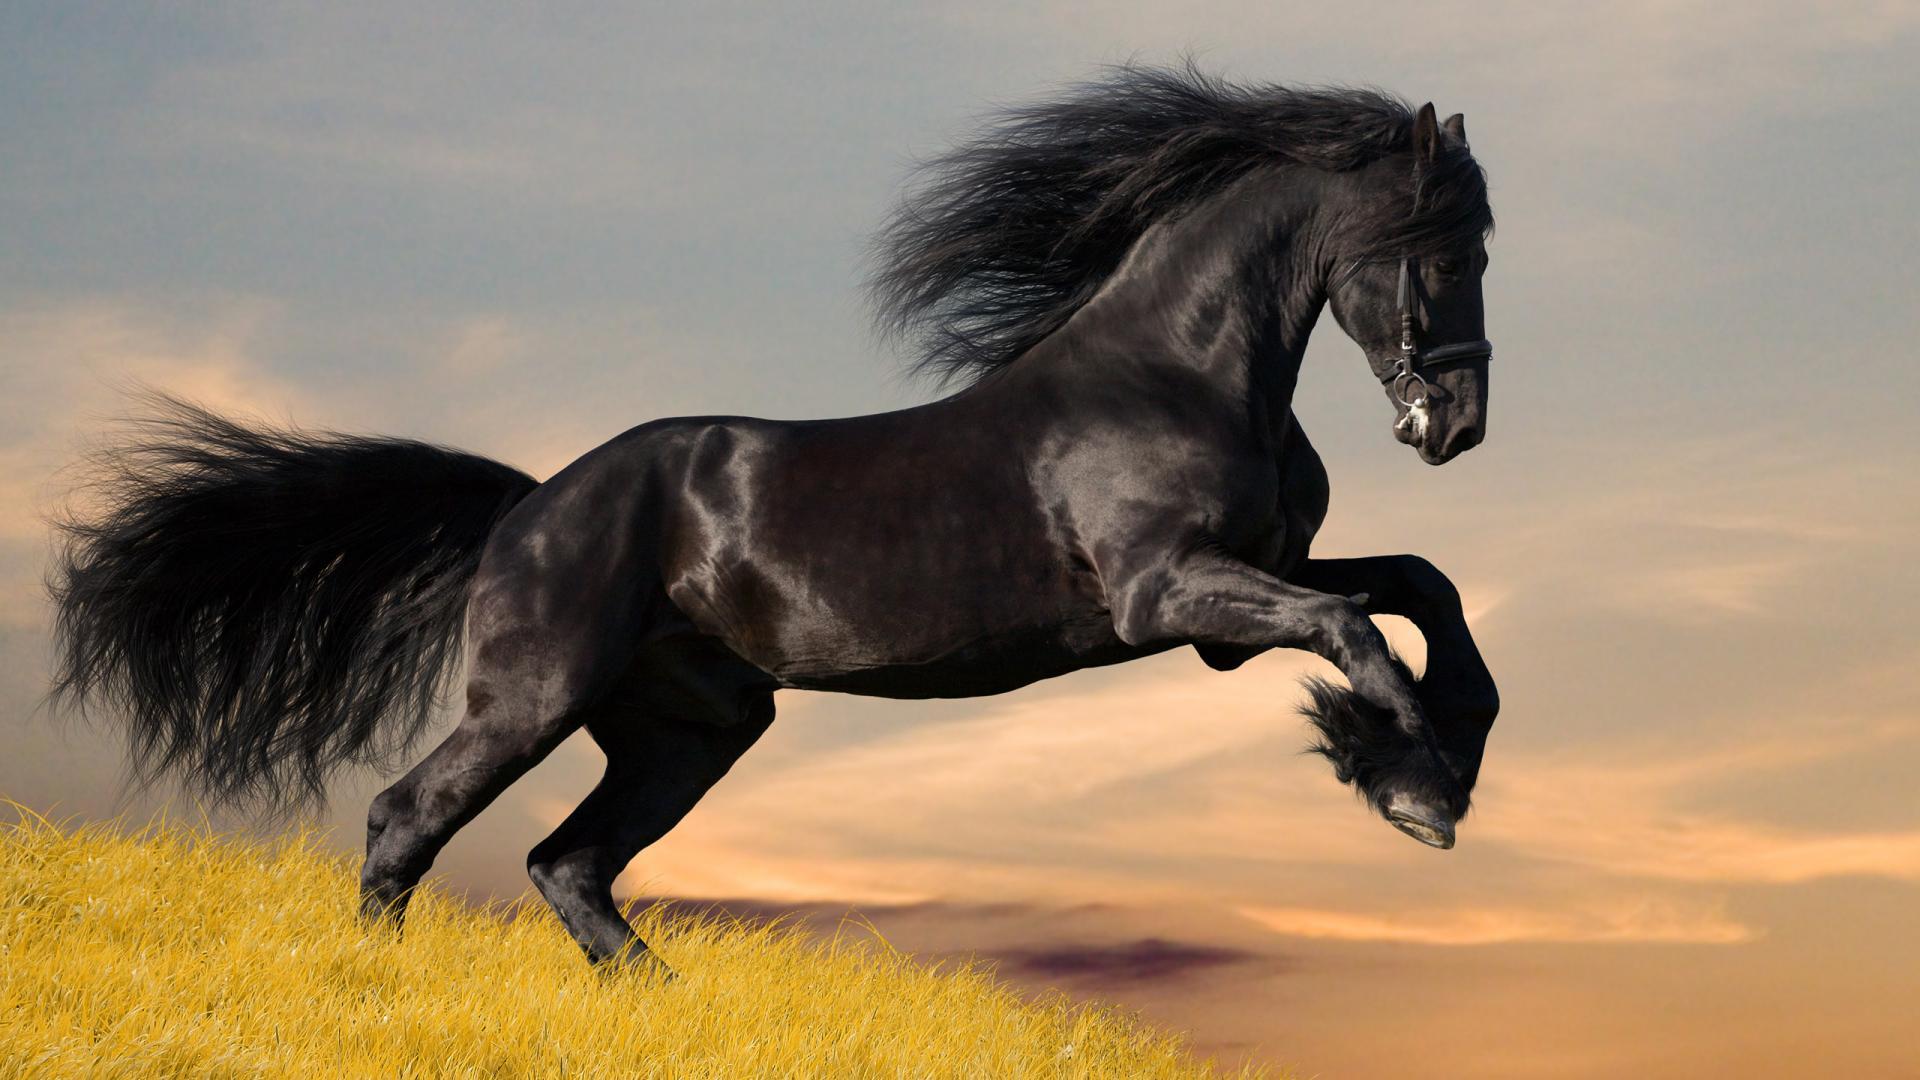 HD Wallpaper Widescreen 1080P 3D. Black Running Horse Animal